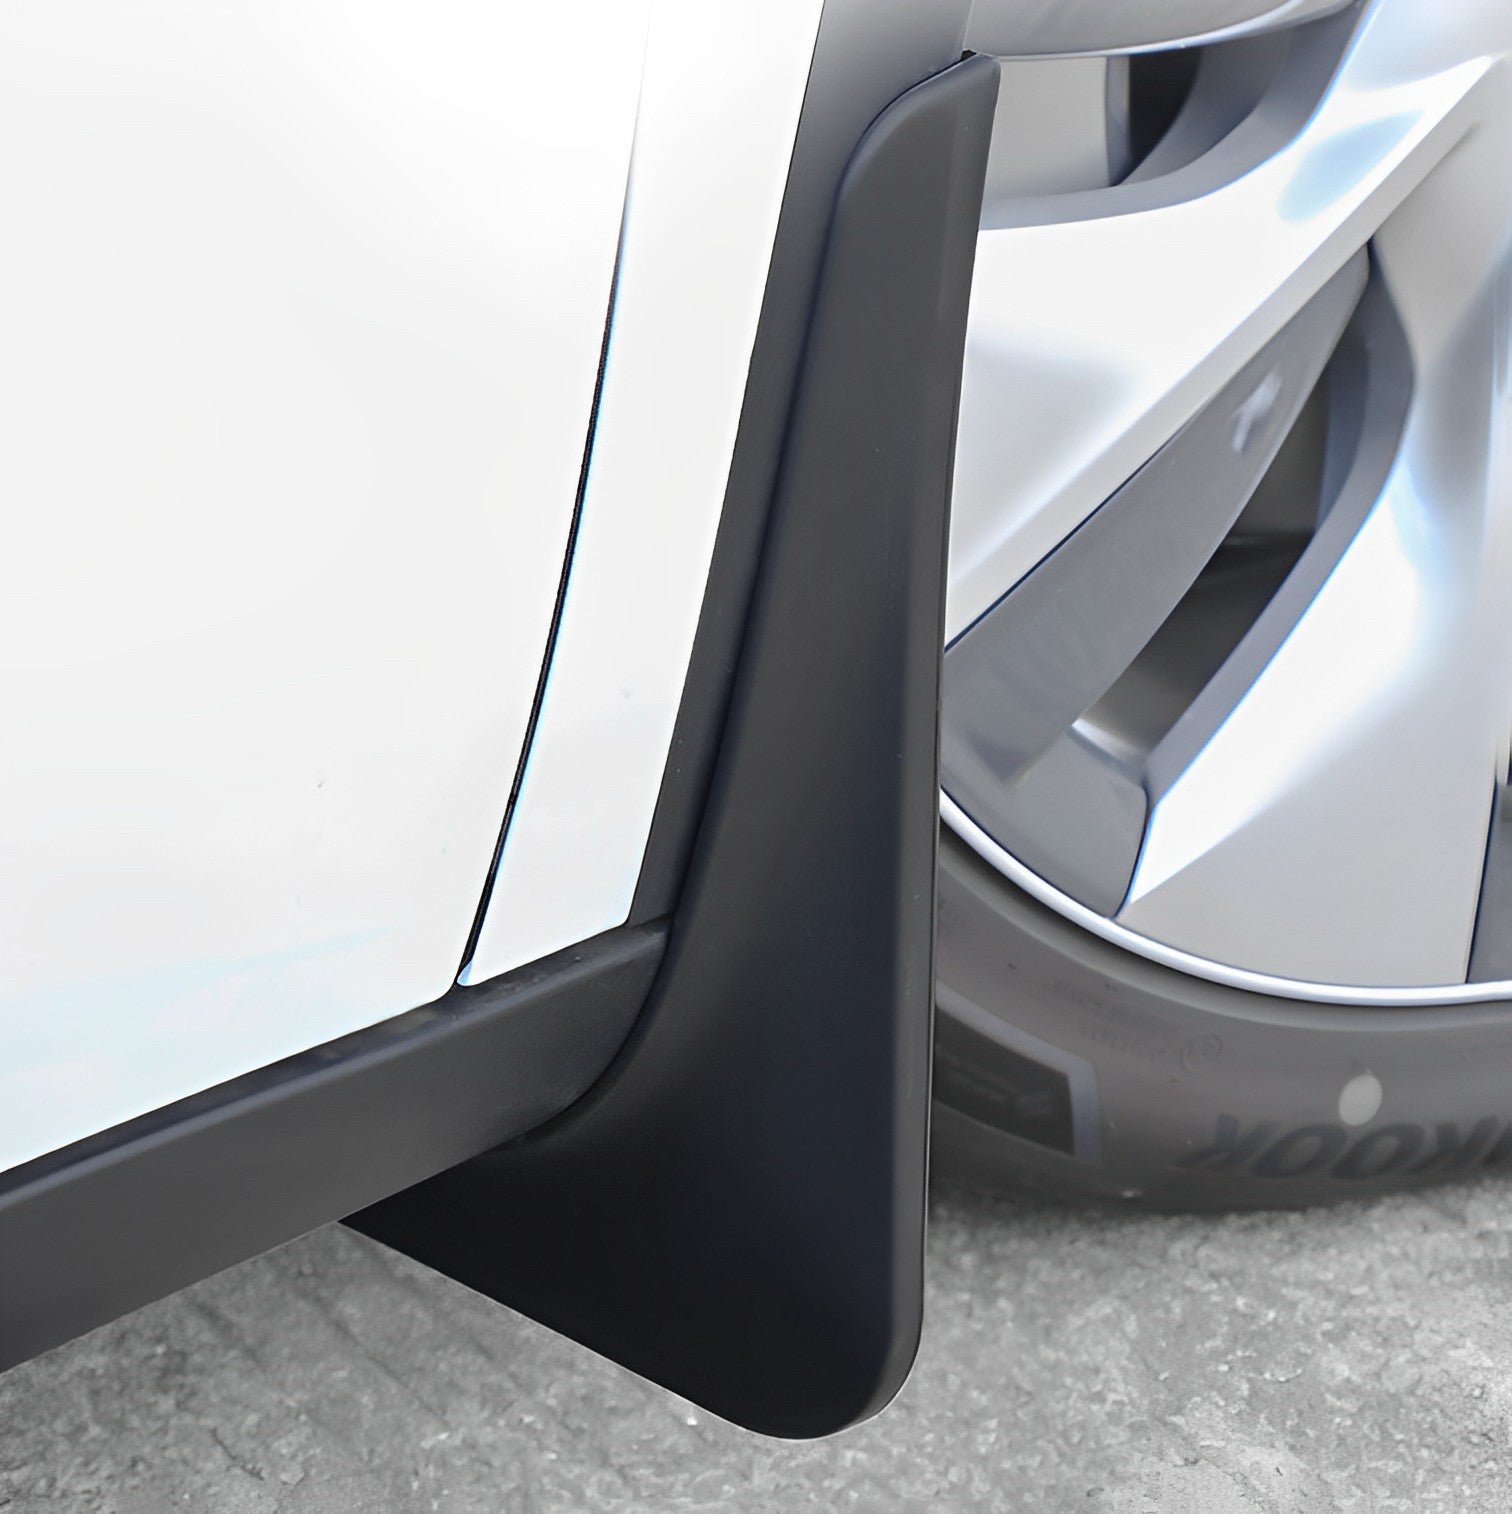 Tesla Model Y/3 OEM-Schmutzfänger vorne und hinten, kein Bohrkotflügel –  TESLAUNCH